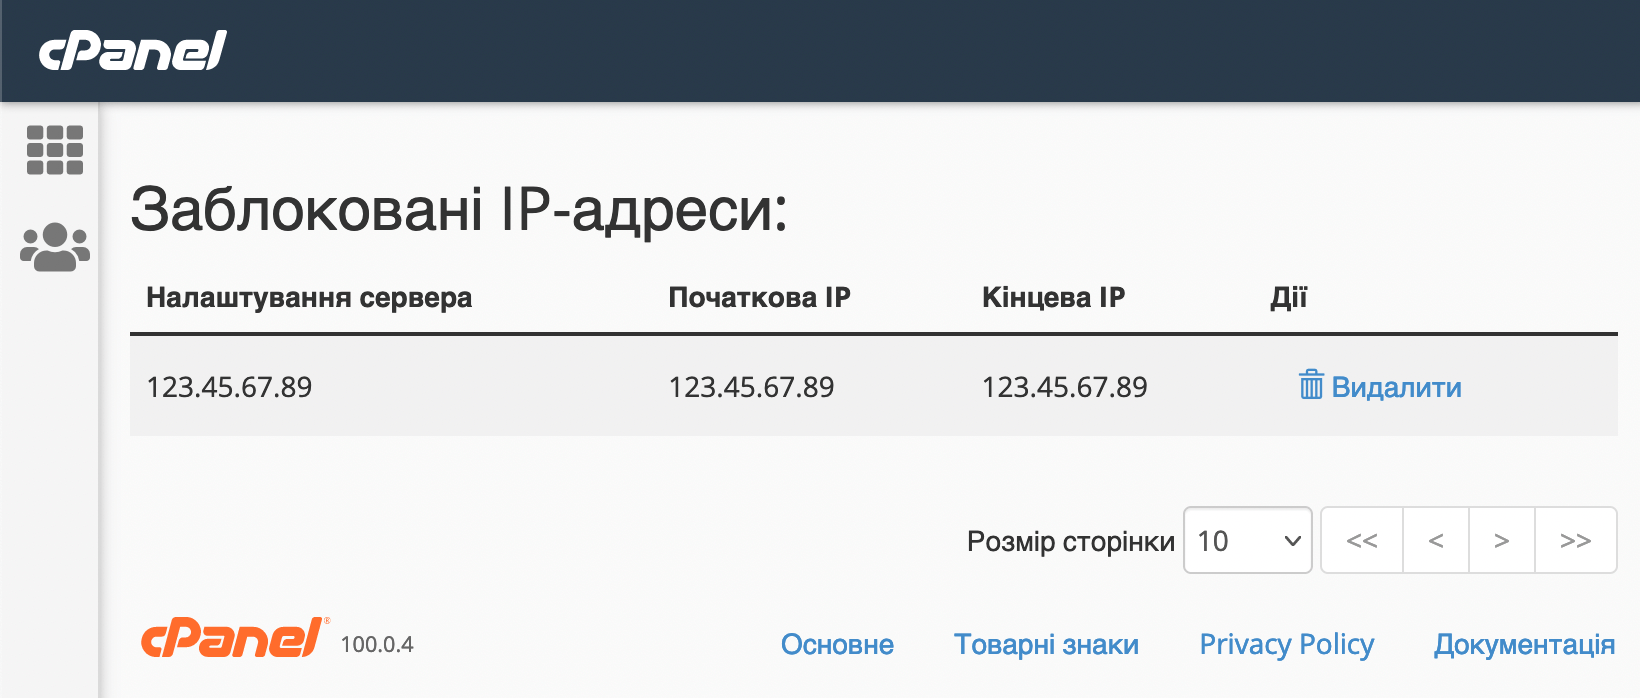 Заблоковані IP-адреси